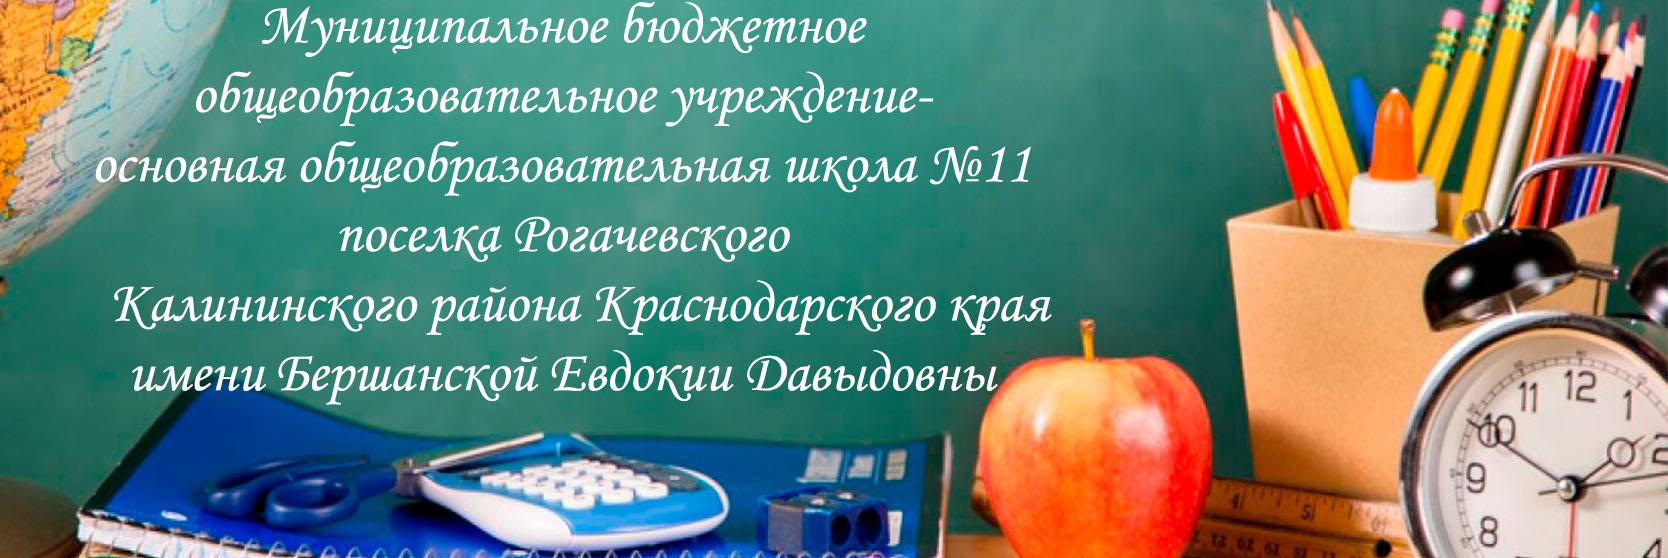 Муниципальное бюджетное общеобразовательное учреждение-основная общеобразовательная школа №11 поселка Рогачевского